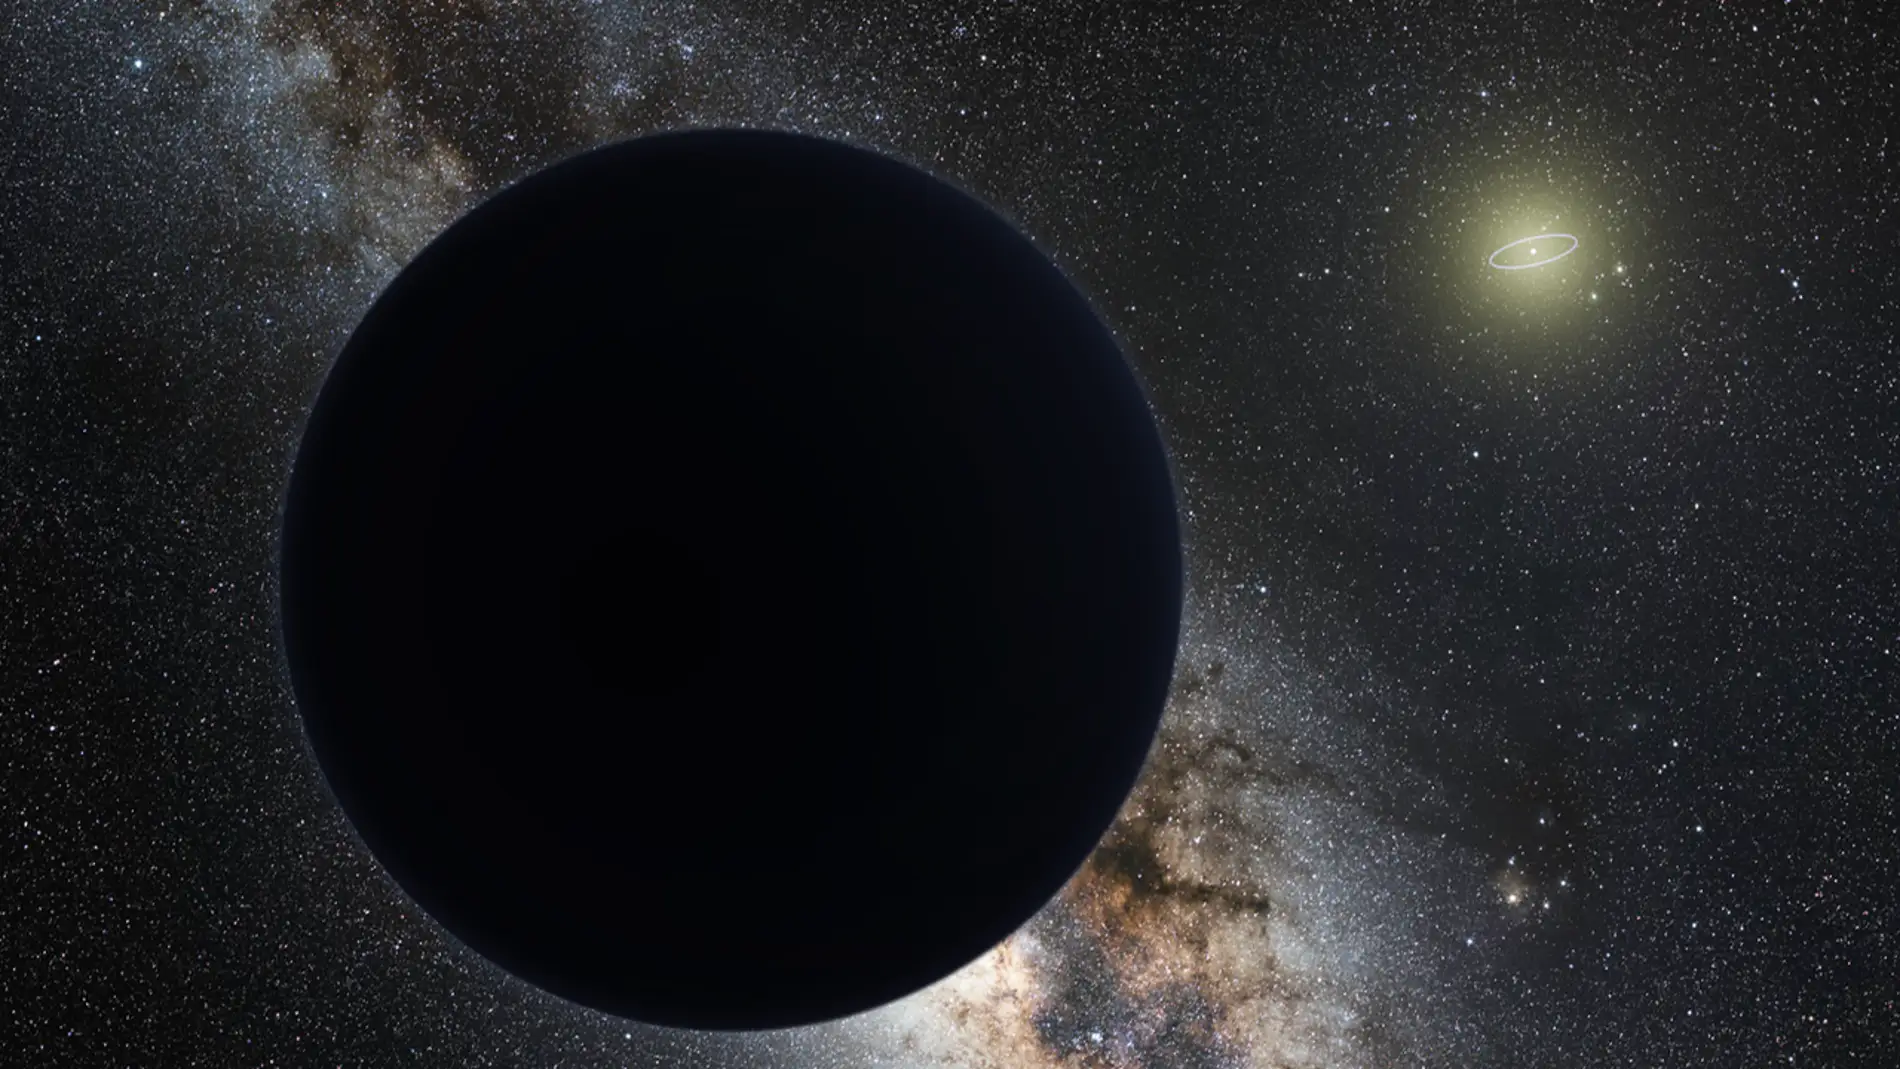 Impresión artística del Planeta Nueve eclipsando la parte central de la Vía Láctea. La órbita de Neptuno está marcada por una elipse alrededor del Sol